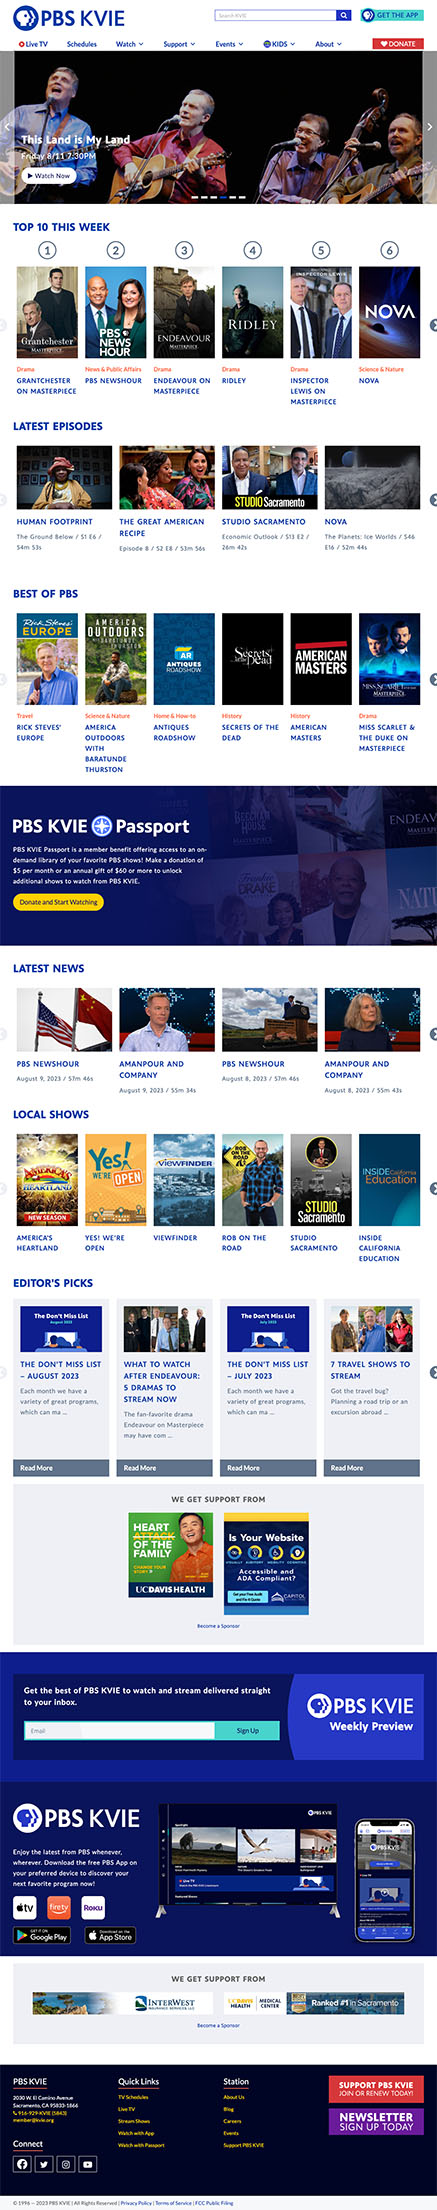 PBS KVIE Website Homepage Screenshot